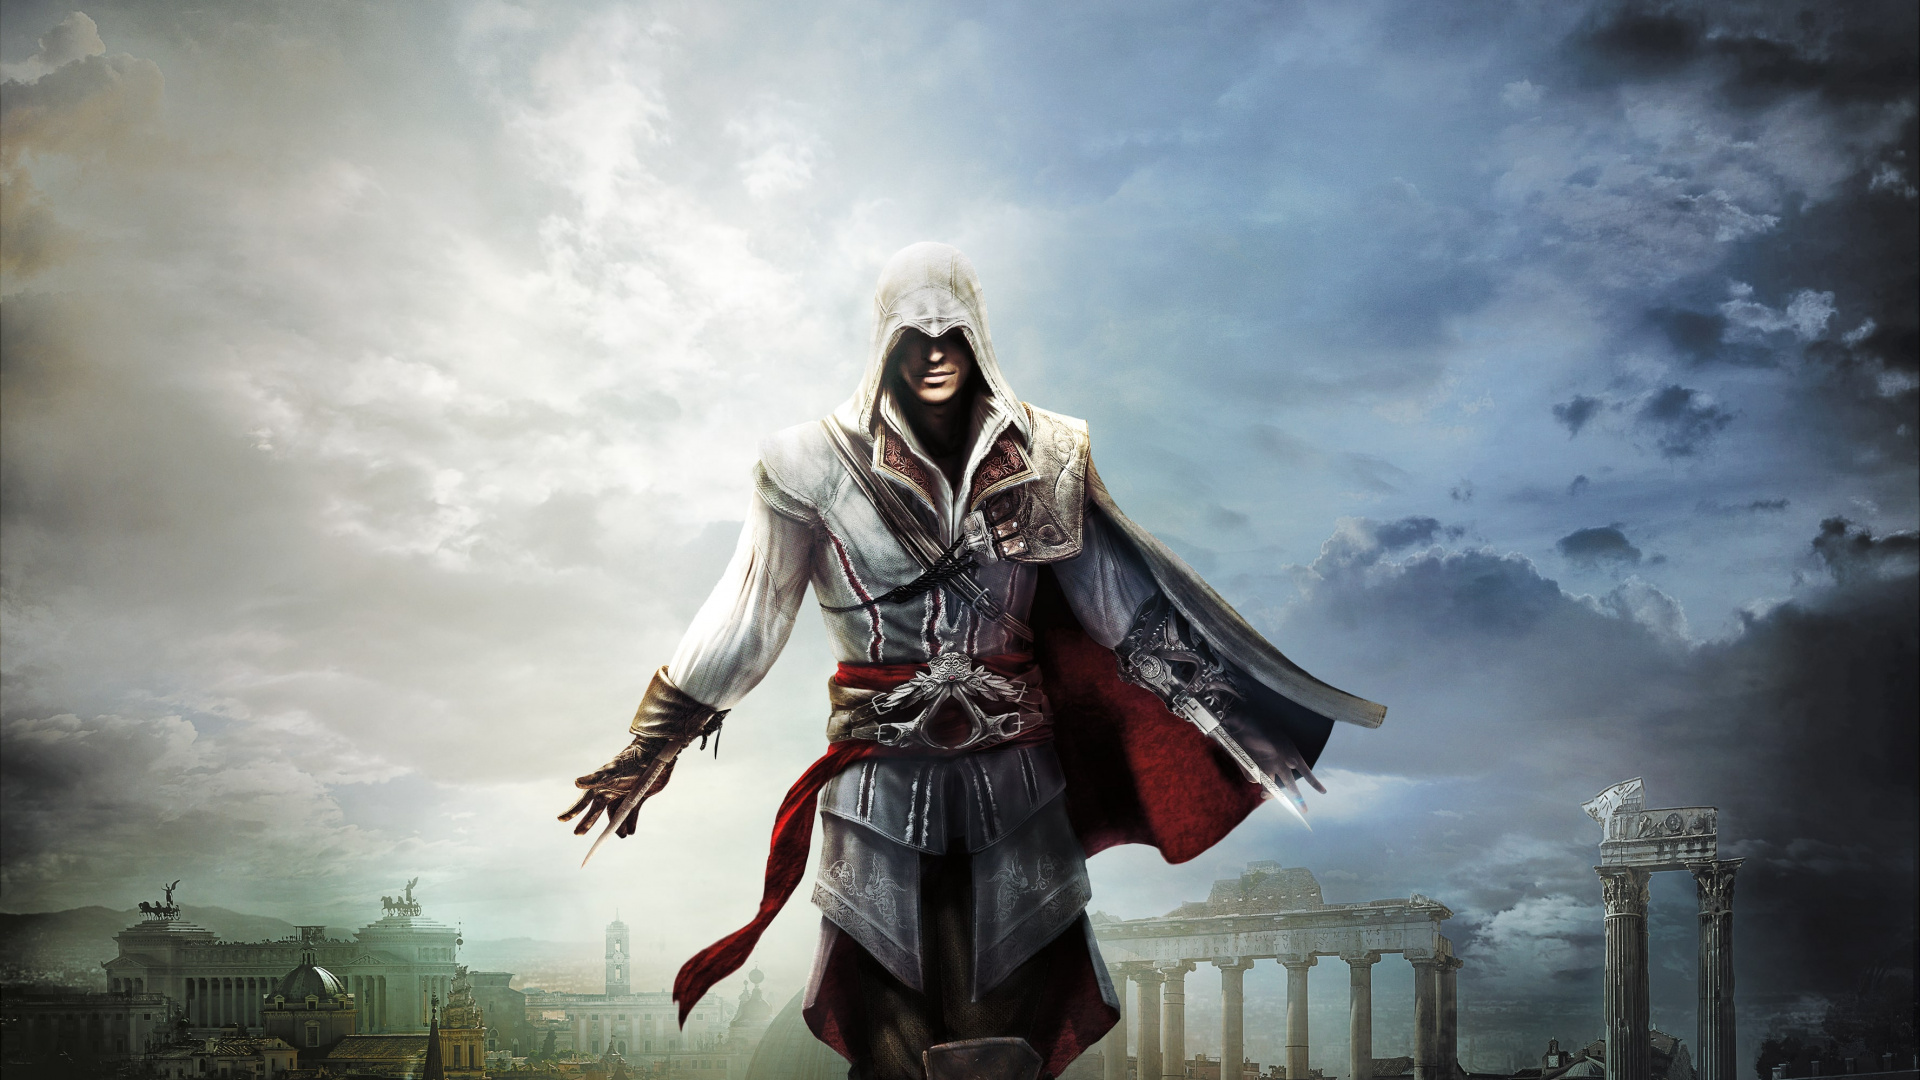 Ezio Auditore, Les Jeux Vidéo, Assassins Creed Revelations, Ciel, Assassins Creed Ezio Trilogy. Wallpaper in 1920x1080 Resolution